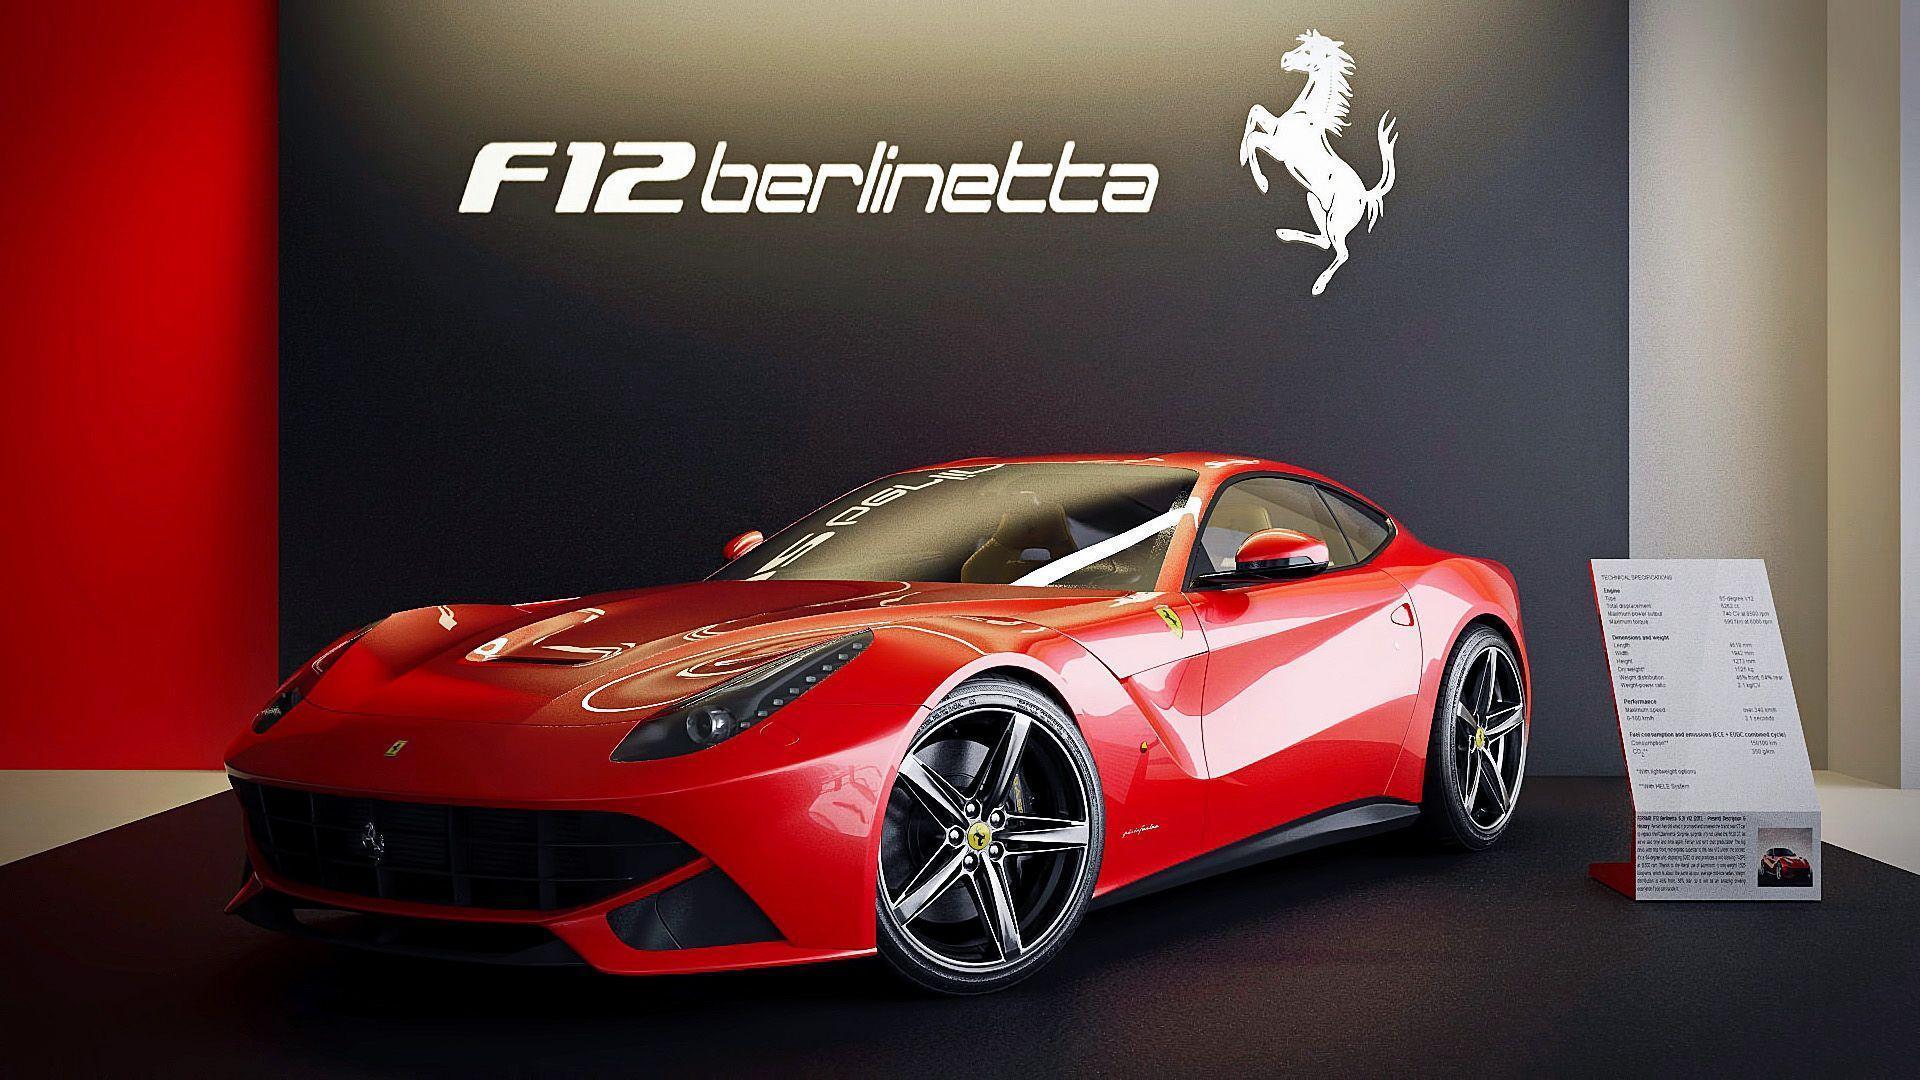 Ferrari F12 Berlinetta Wallpaper